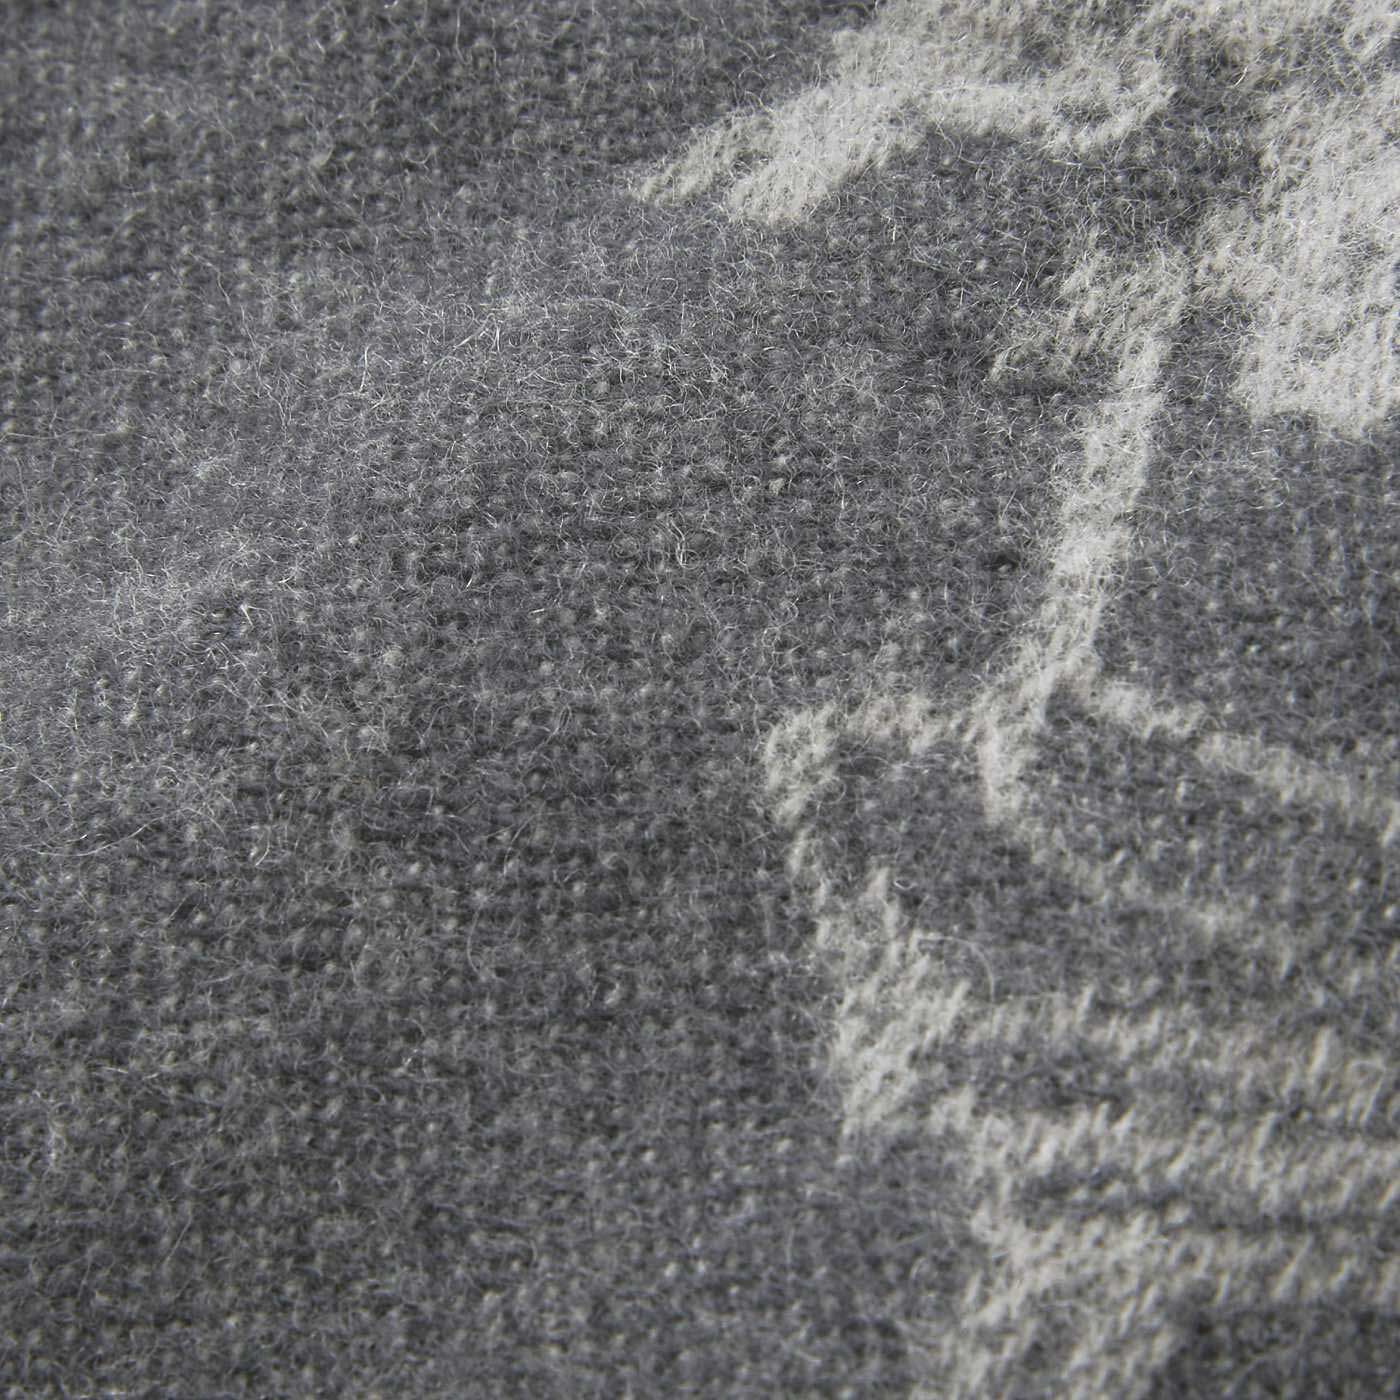 SAANA JA OLLI|サーナ ヤ オッリ　シルケット加工ウールで肌心地やさしい 日々になじむジャカード織りウールストール〈スレートグレー〉|シルケット加工をほどこしたウールを使用。表面を起毛させてふわふわの肌ざわり。